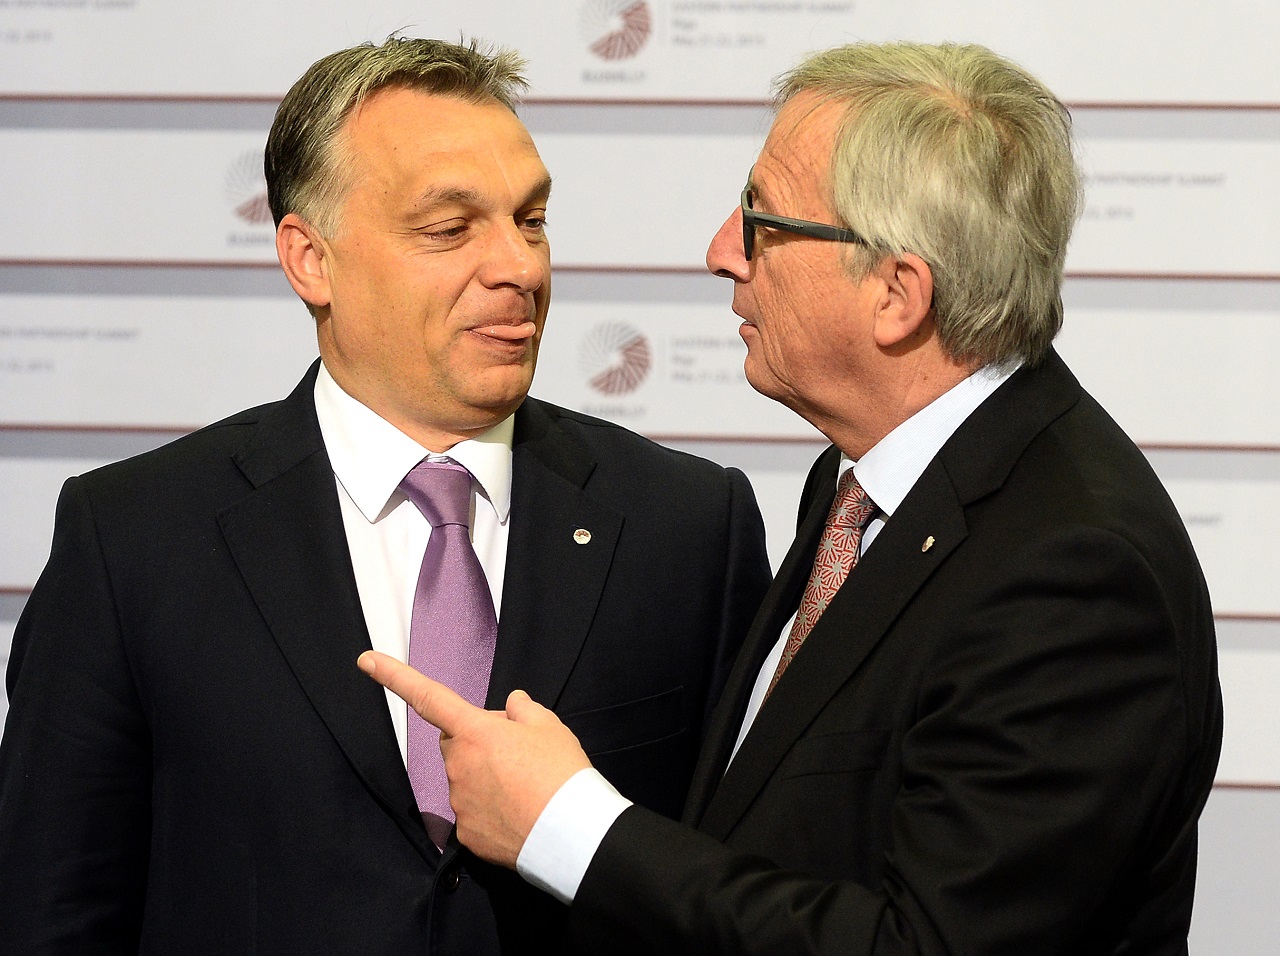 Orbán Viktor és Jean-Claude Juncker, az Európai Bizottság elnöke társalog a Keleti Partnerségi csúcstalálkozón, Rigában. A sajtó élénken foglalkozott azzal a protokollárisan igen kényes szituációval, amelyben Juncker a ‘Helló, diktátor!‘ mondattal és egy gyenge pofonnal köszöntötte a magyar miniszterelnököt. (f.: AFP) 